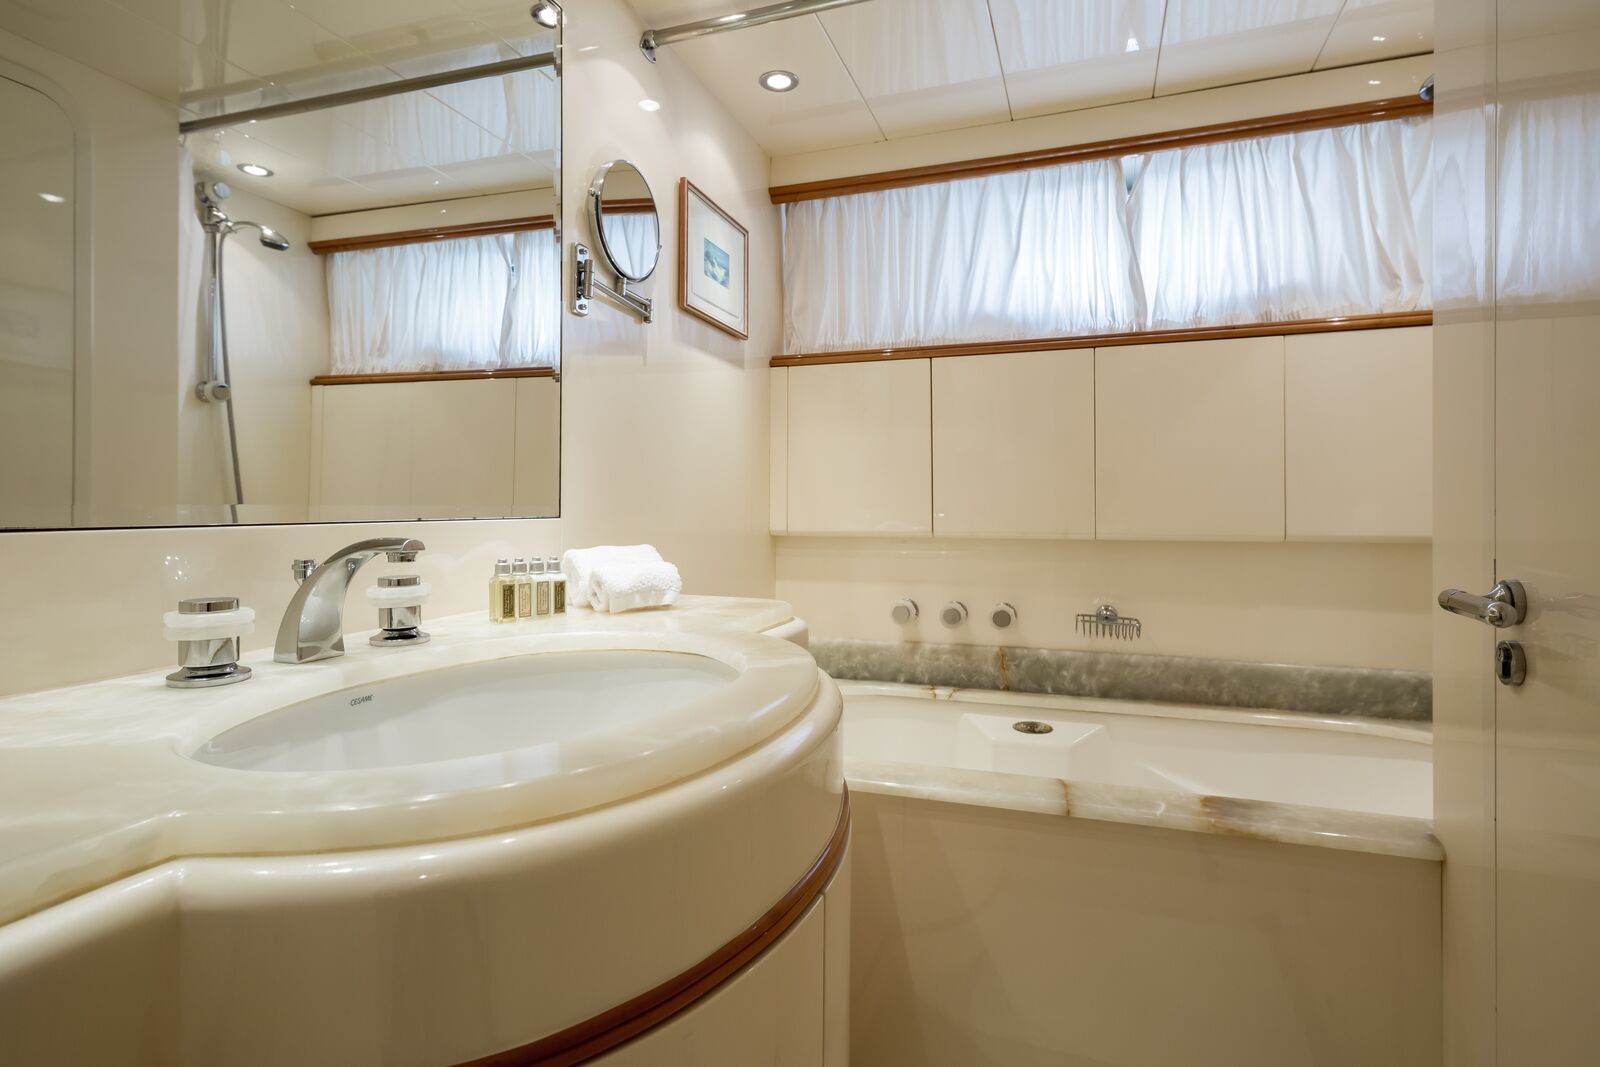 INDULGENCE OF POOLE Mangusta 86 Luxury Superyacht VIP Bathroom